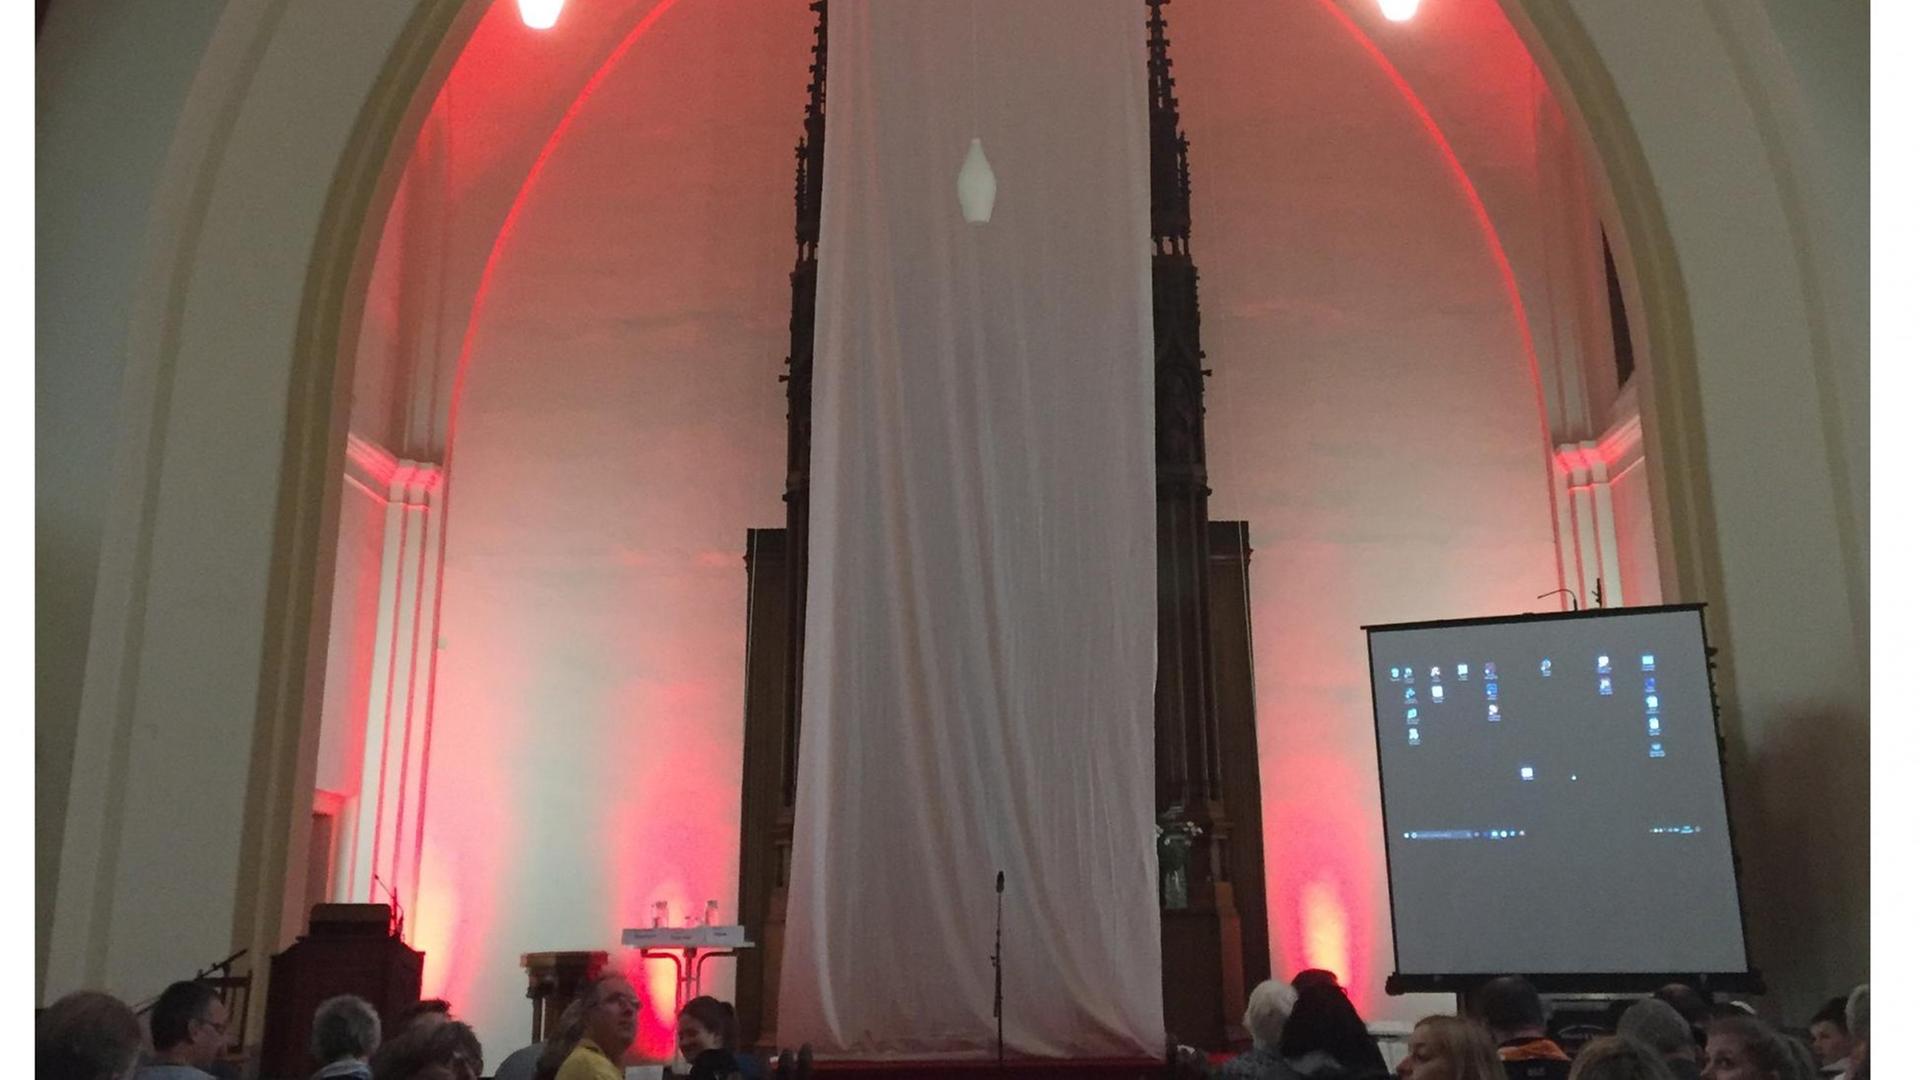 Christlich-islamischer Gottesdienst in Berlin - ein langes weißes Tuch verdeckt den Altar